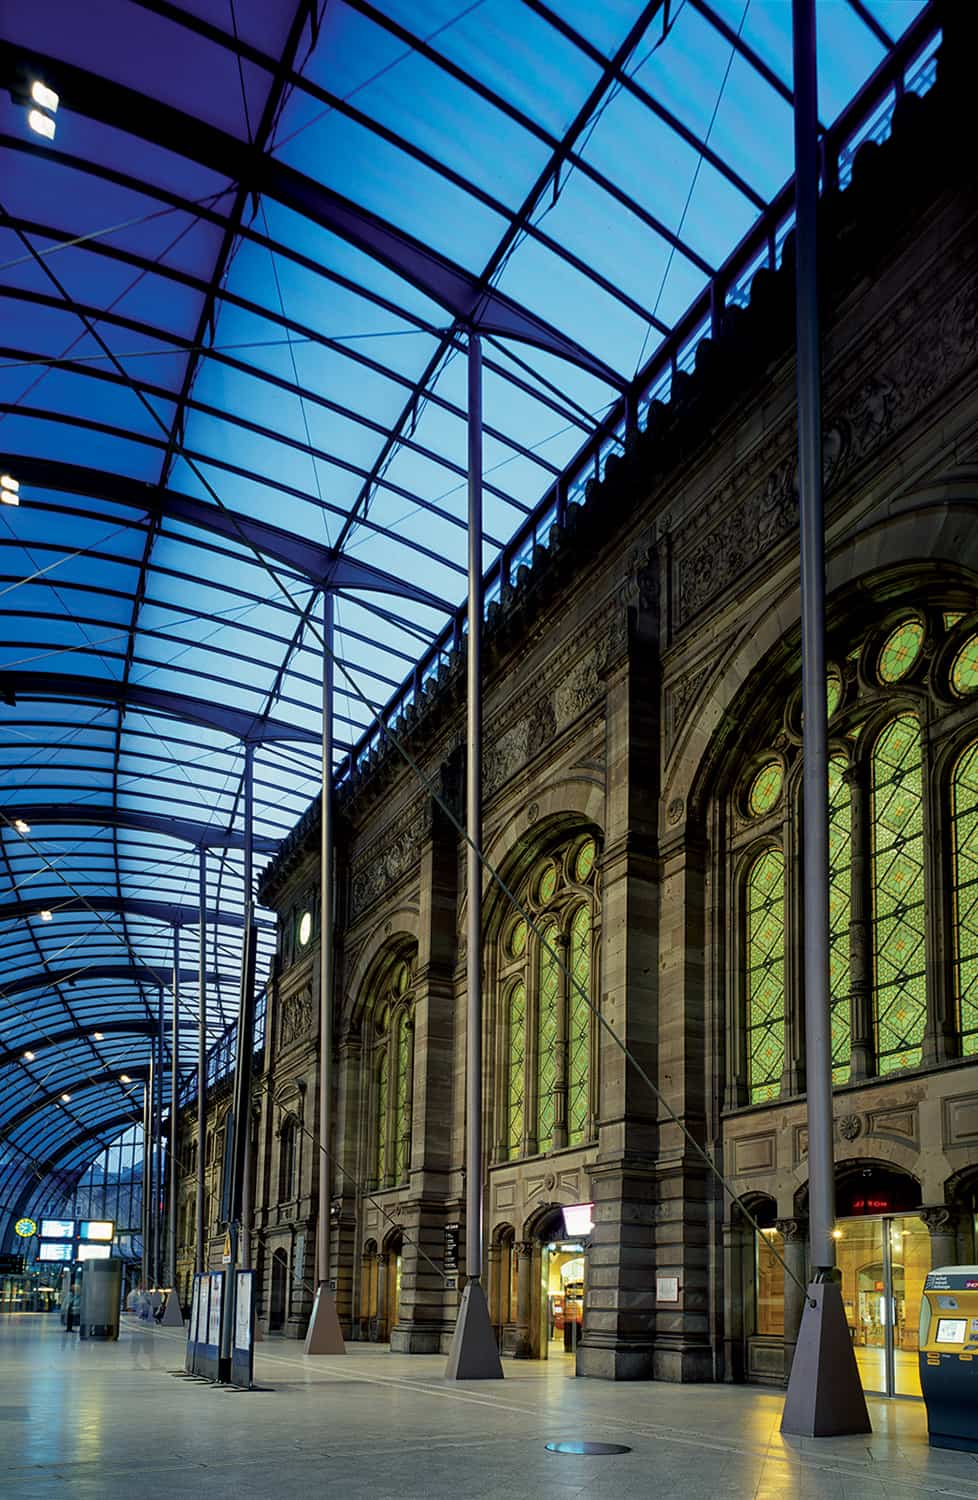 photographie d'architecture de la verrière de la gare de Strasbourg © francois nussbaumer